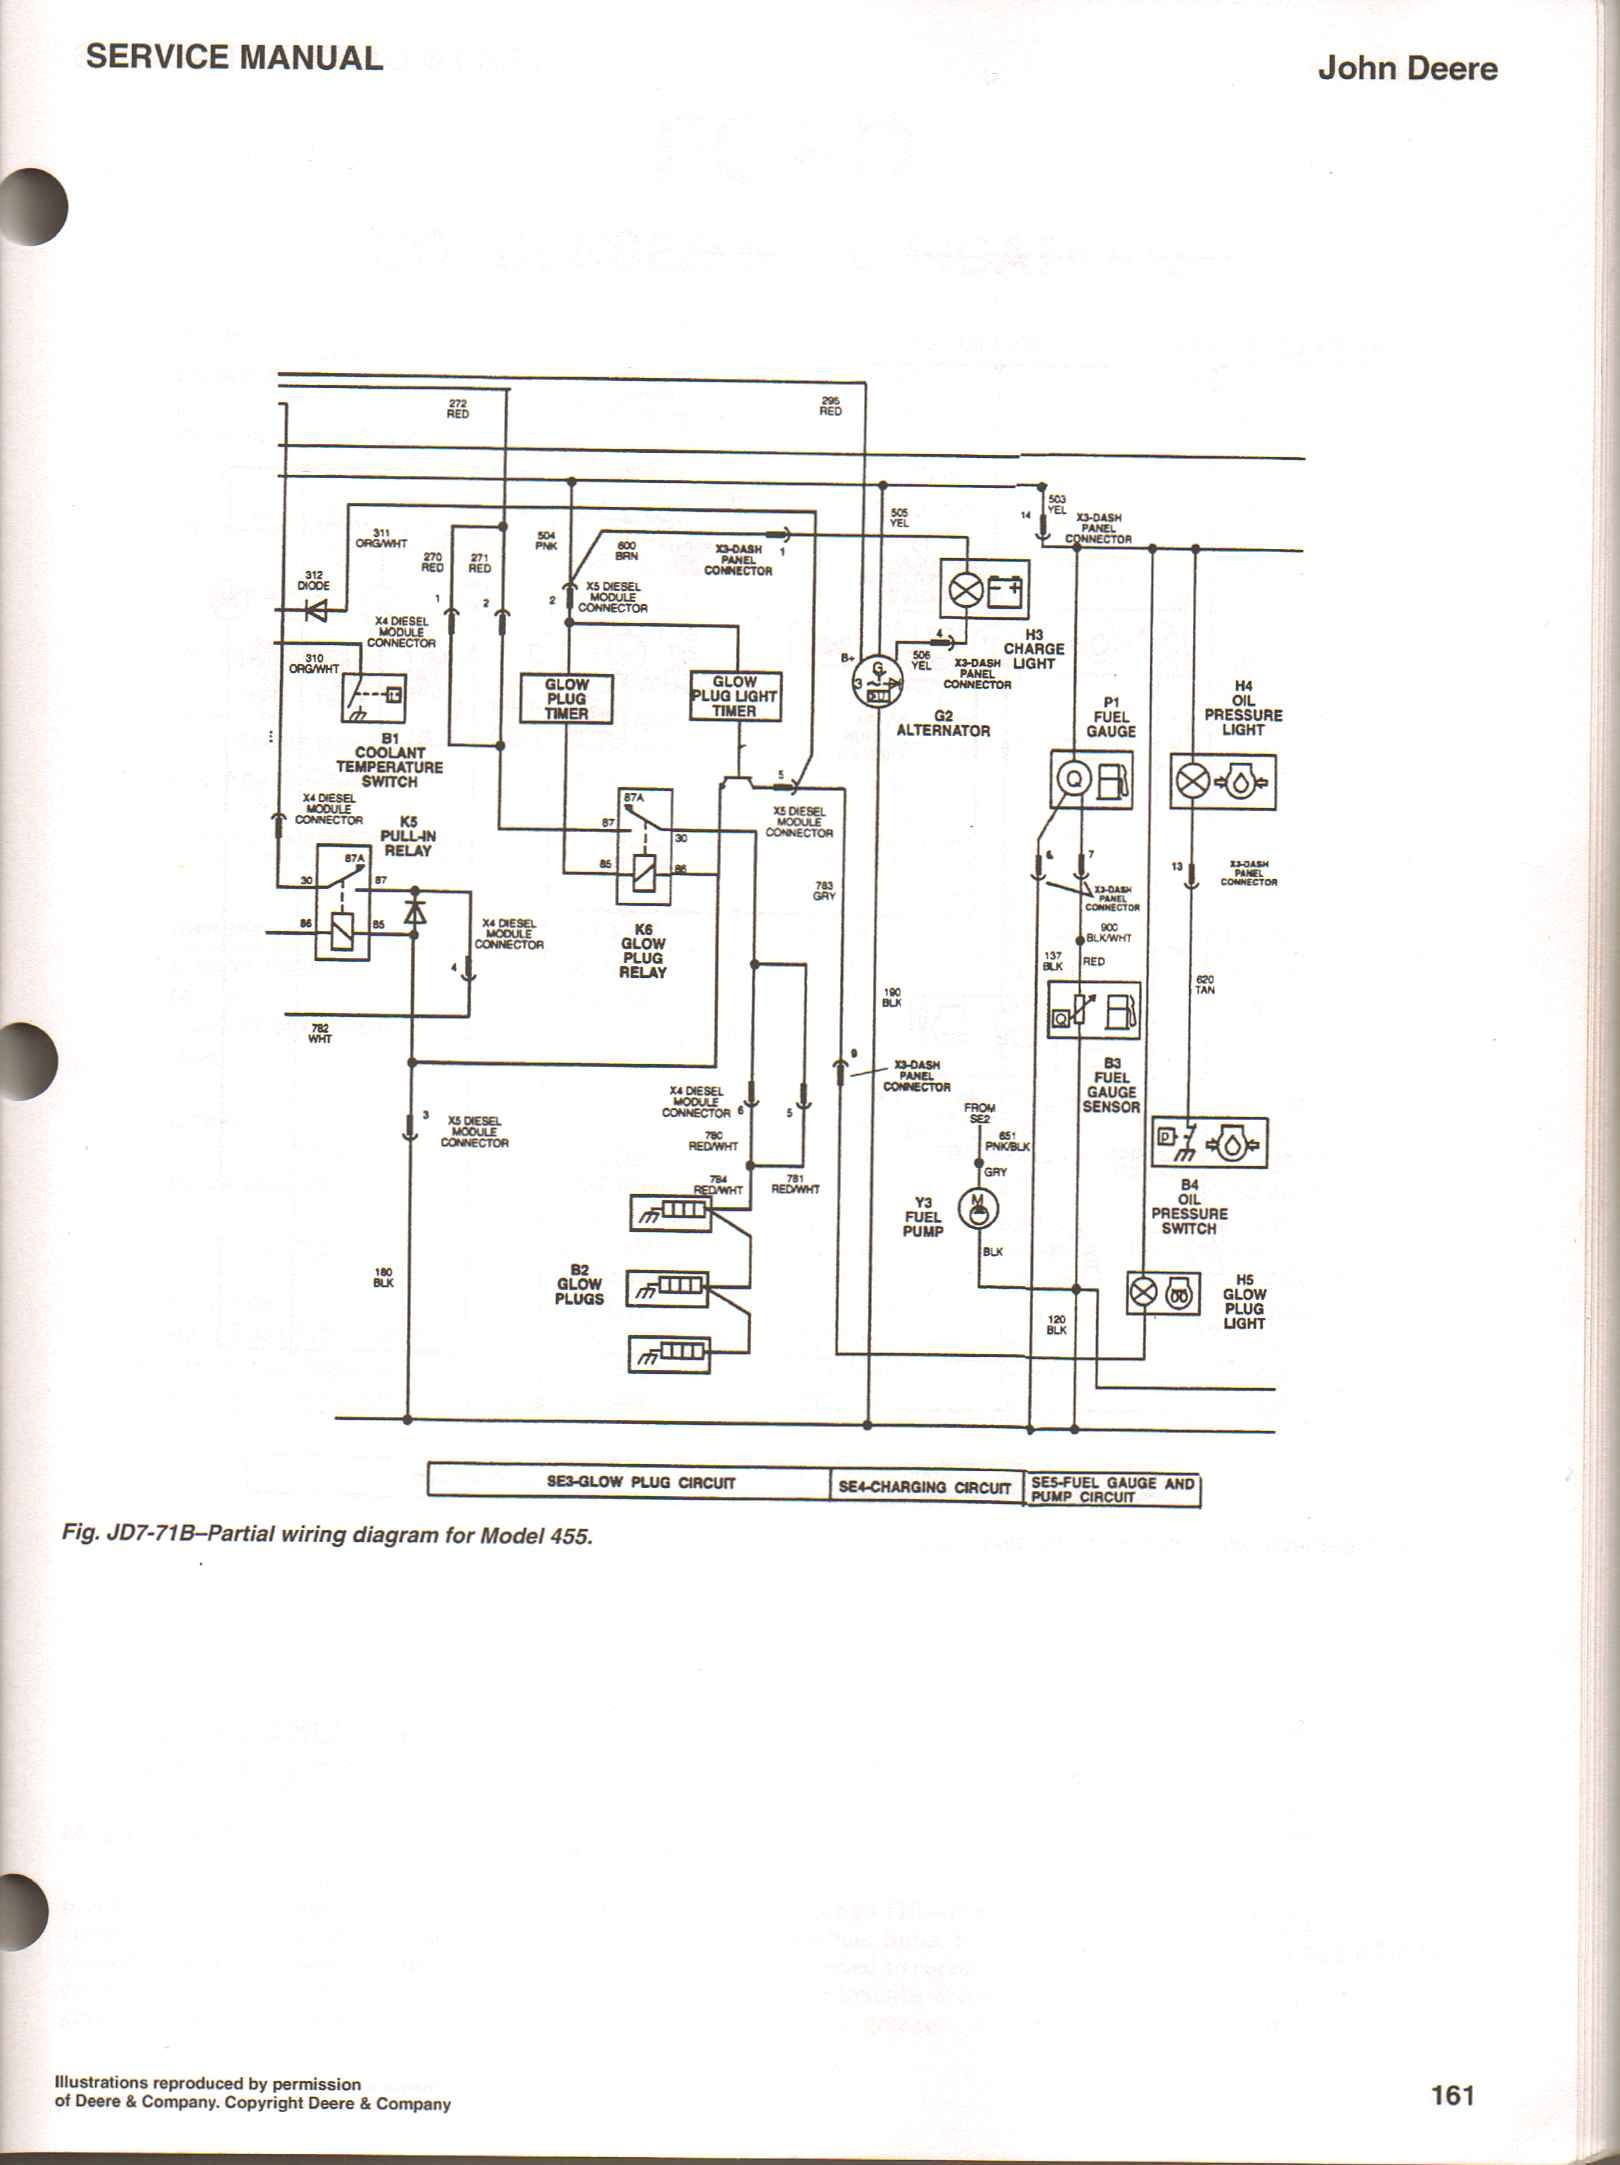 4020 Jd Wiring Diagram 4020 Lp Wiring Diagram Of 4020 Jd Wiring Diagram